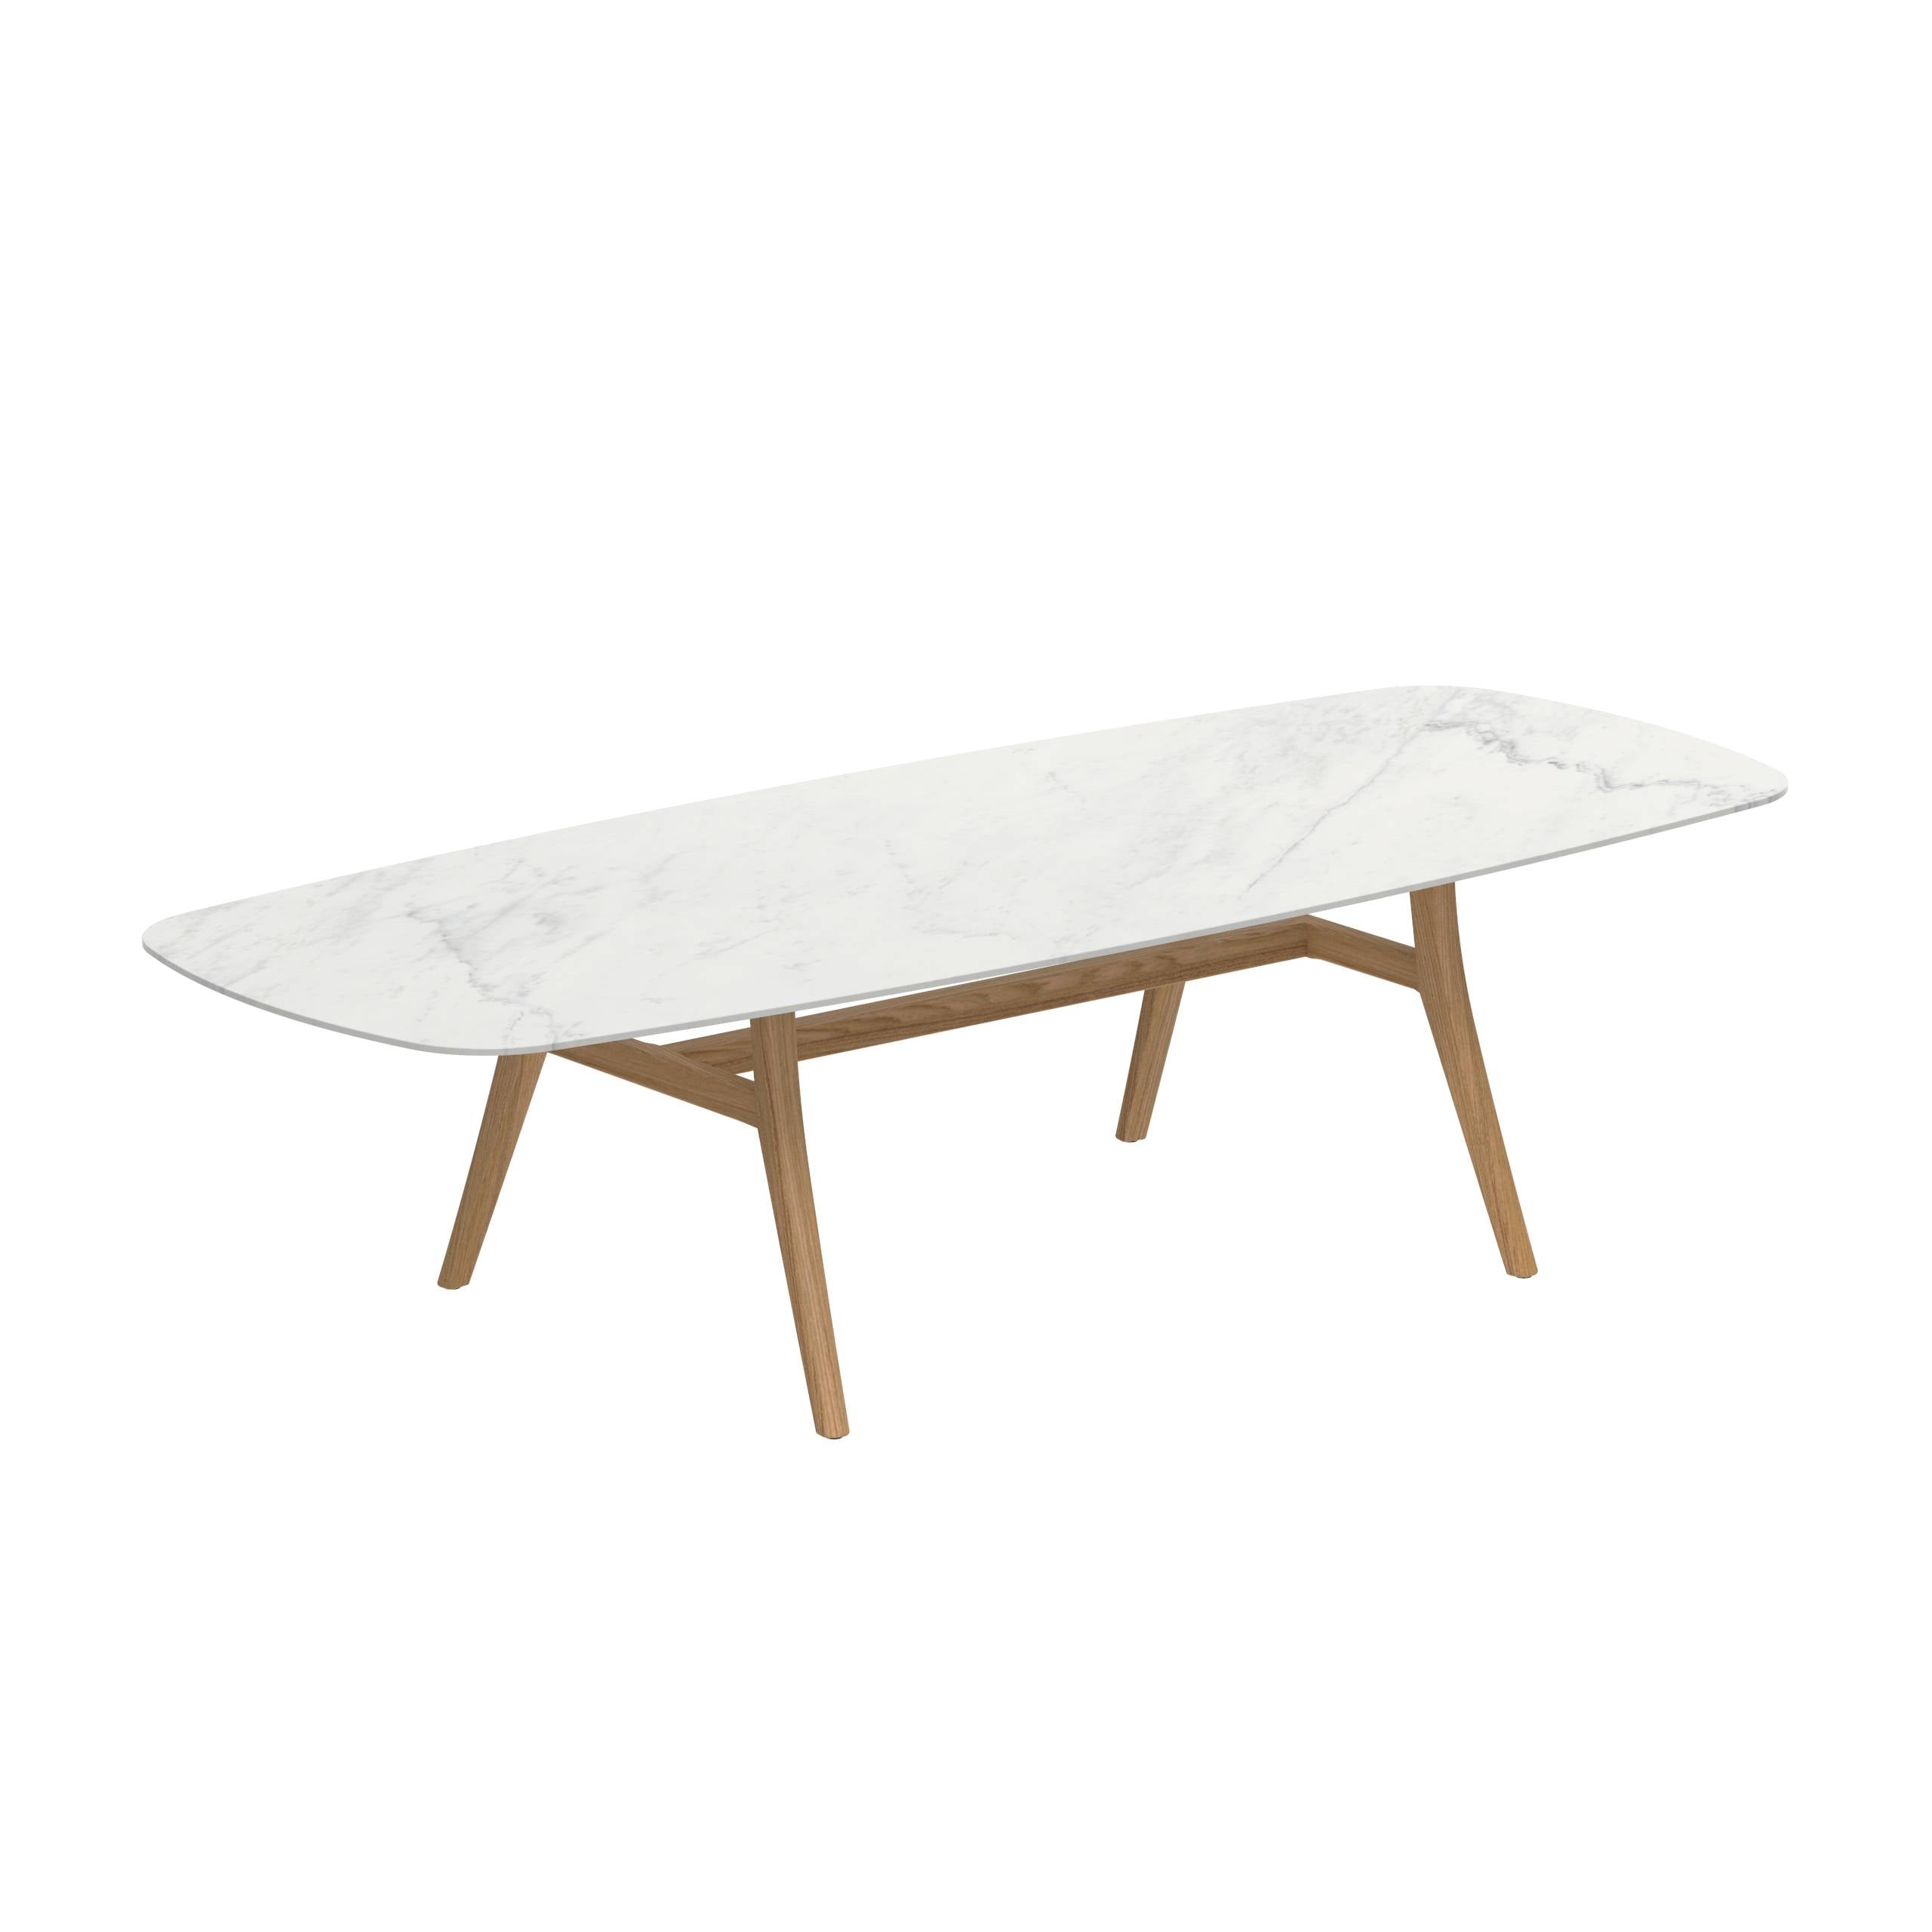 Zidiz Table 300x120cm Ceramic Bianco Statuario